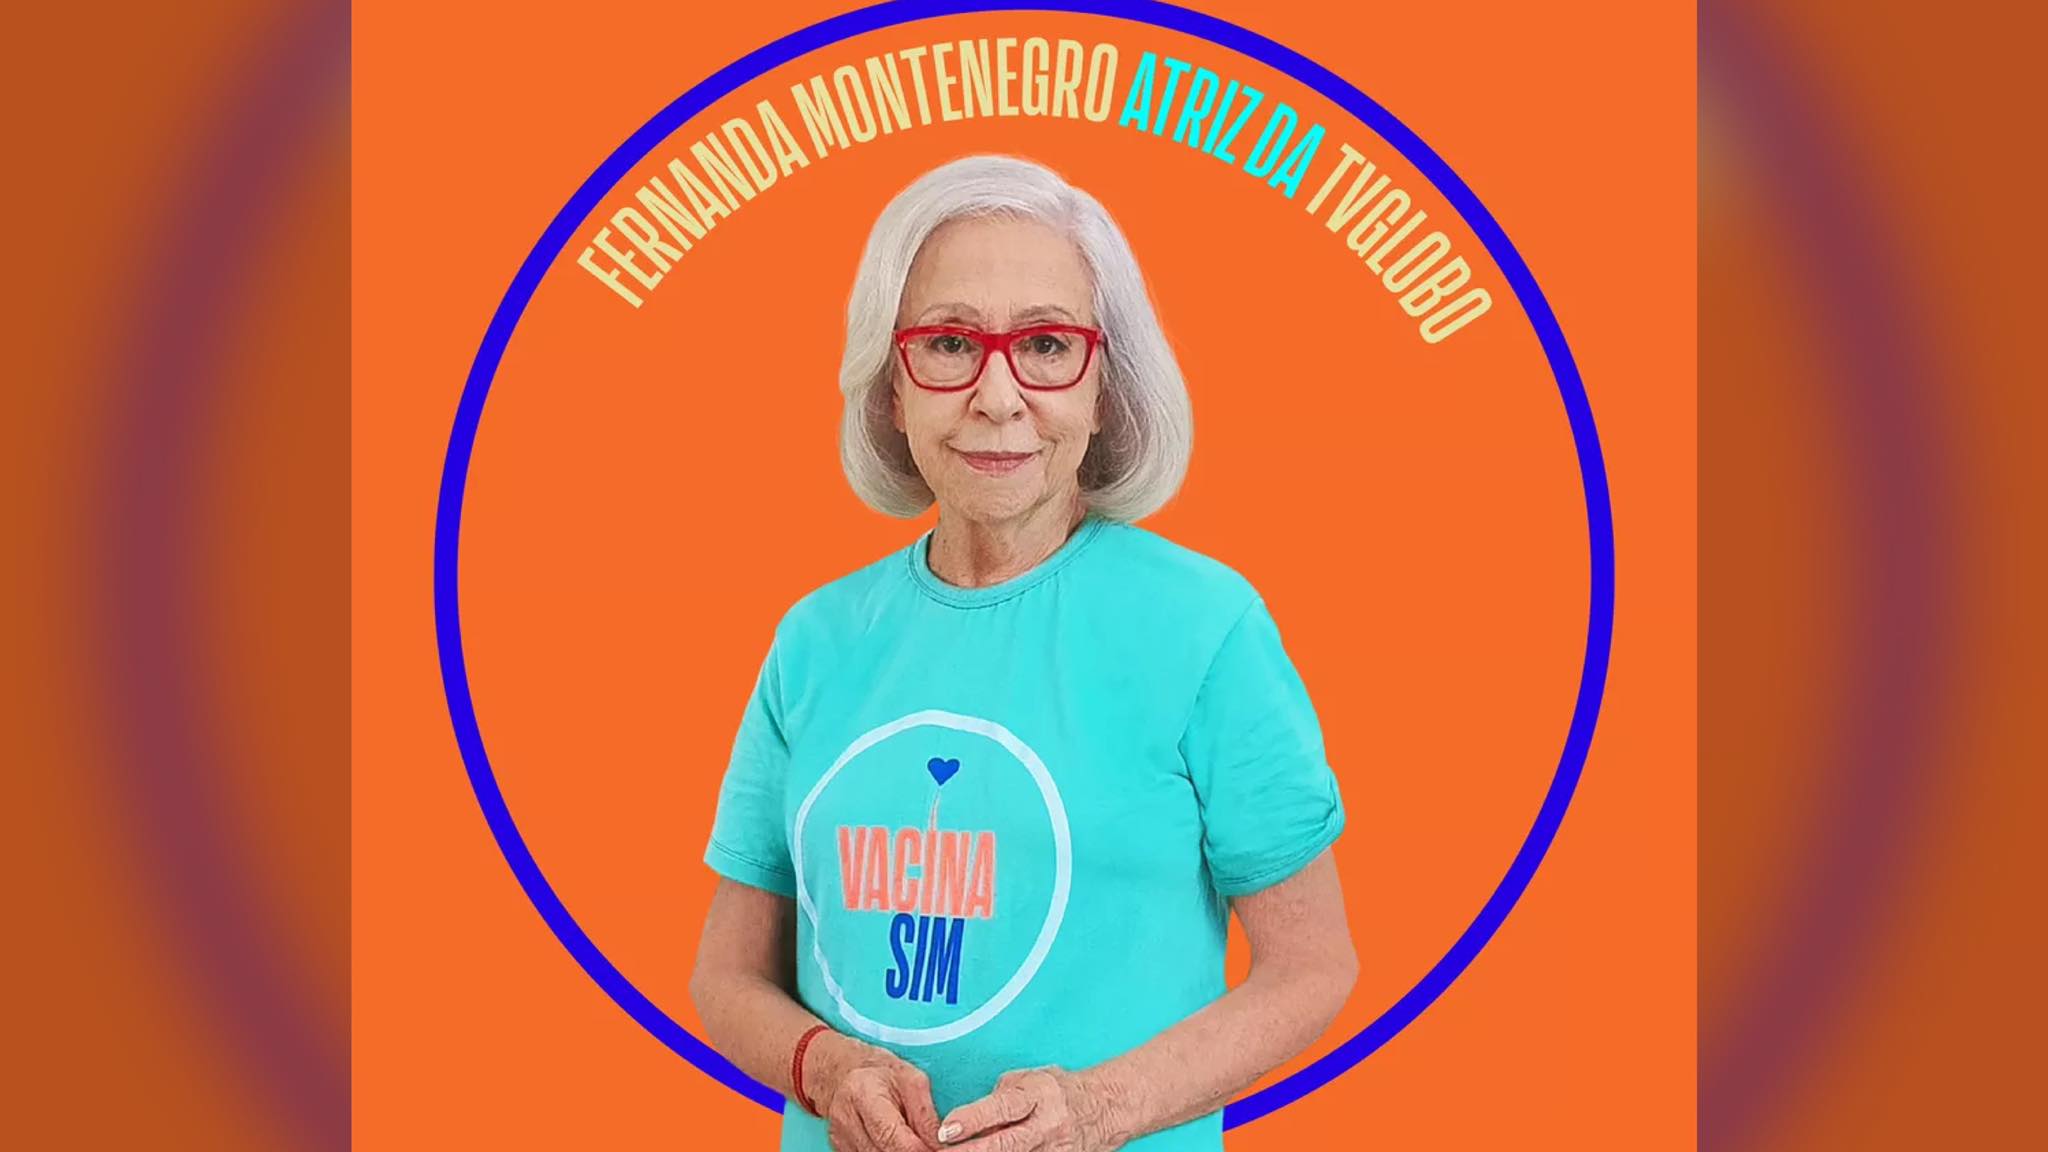 Fernanda Montenegro integrou a campanha Vacina Sim, endossada pela Globo. Fonte: Divulgação